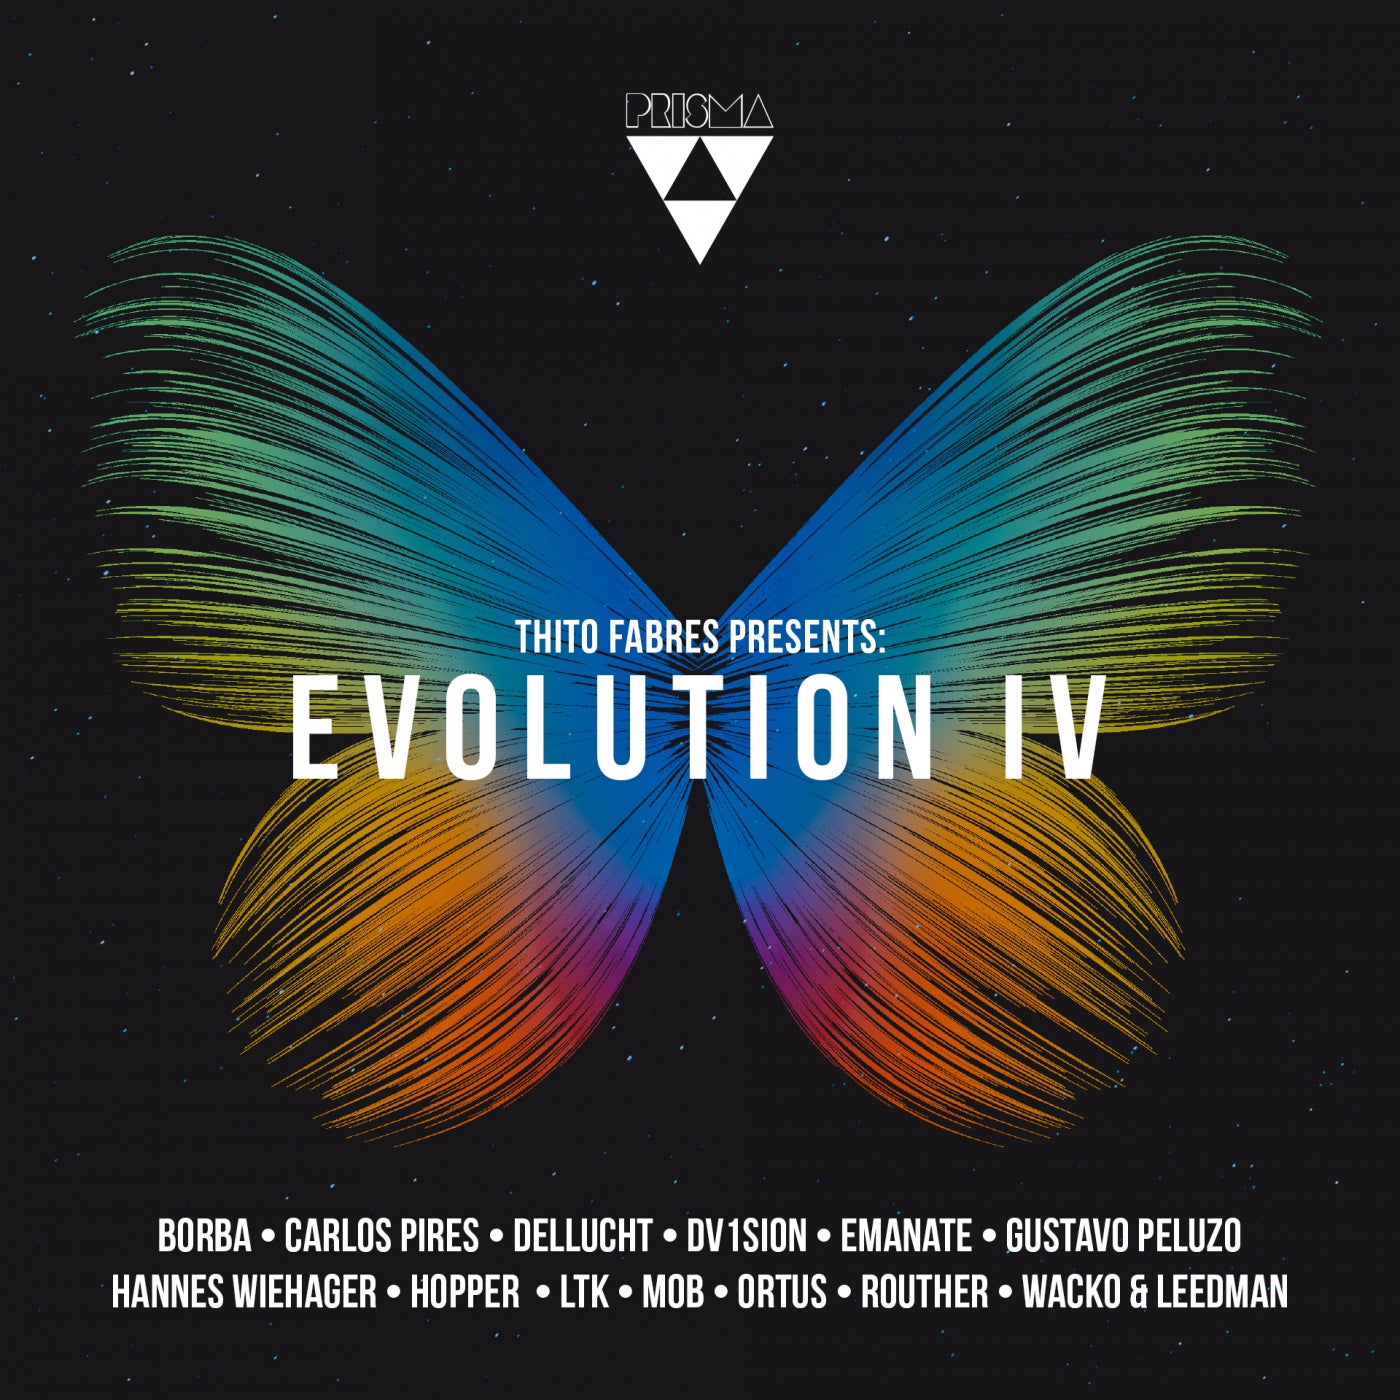 VA - Thito Fabres Presents Evolution ìV [PRSM034]